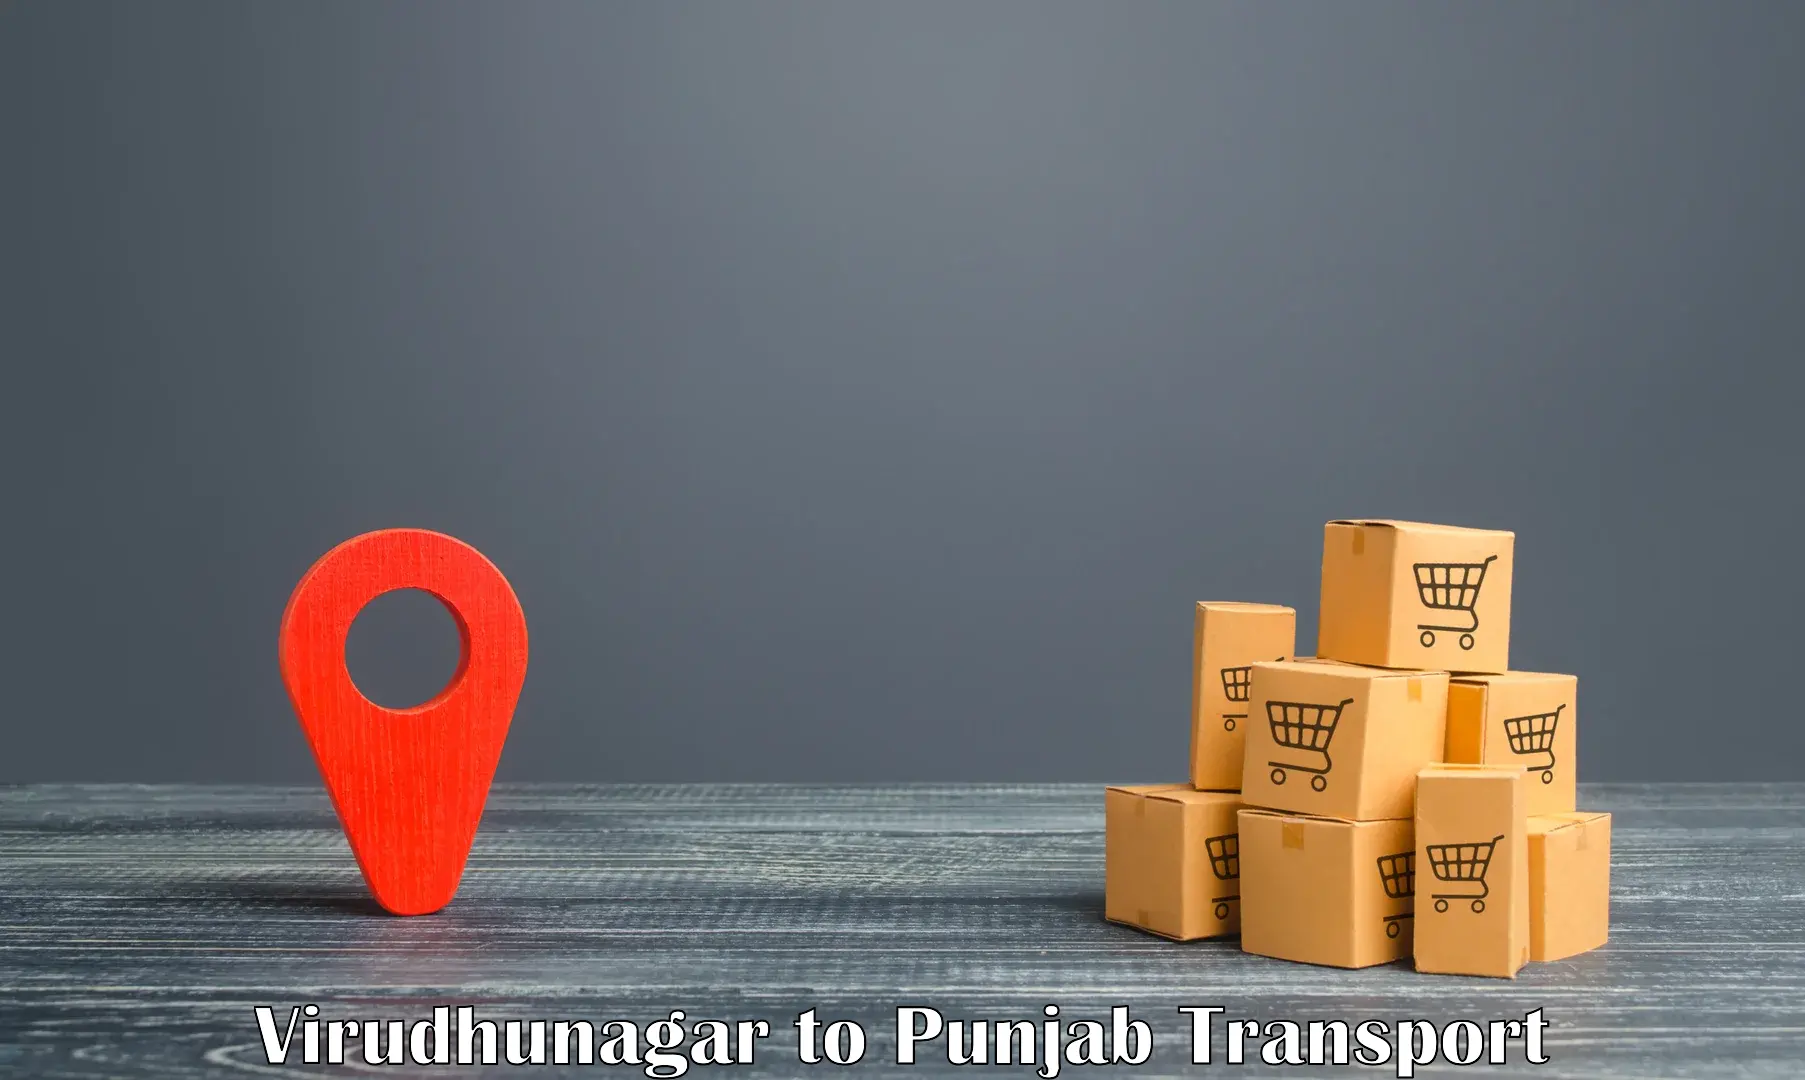 Commercial transport service Virudhunagar to Rupnagar